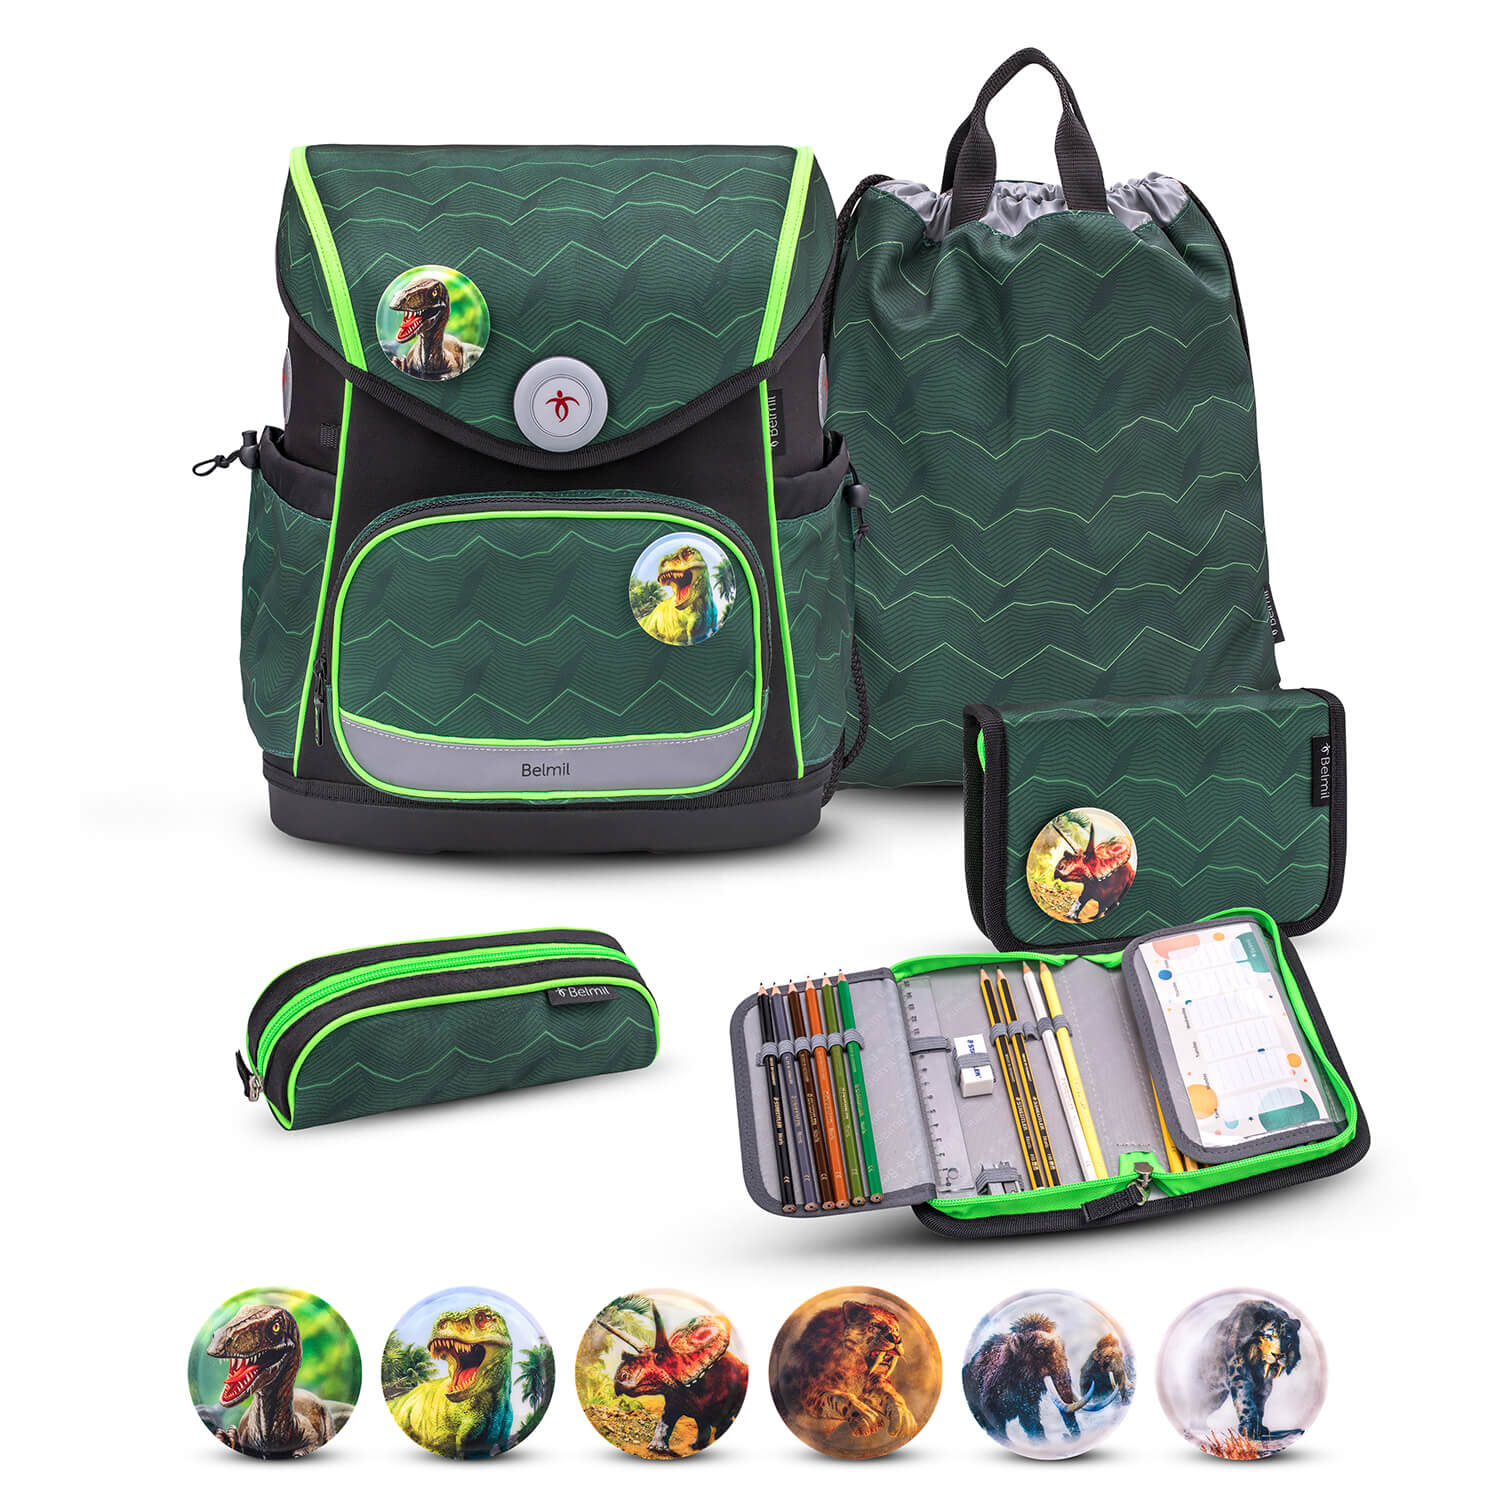 Premium Compact Plus Twist of Lime Schoolbag set 5pcs.